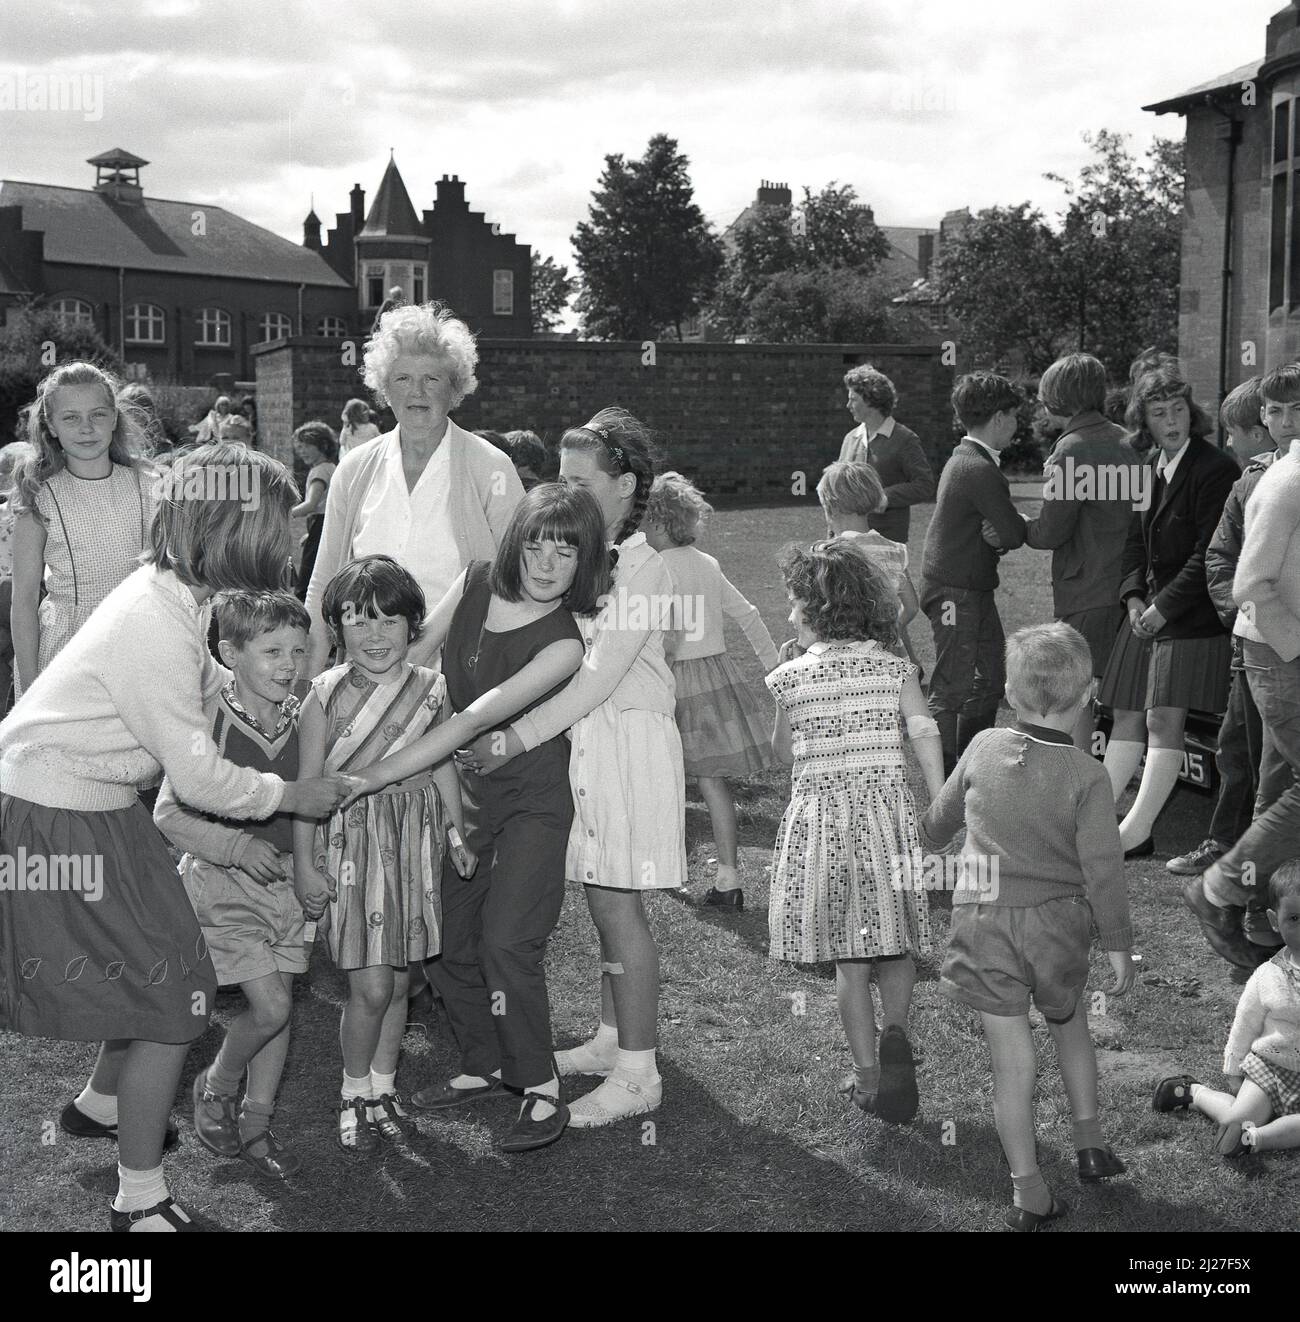 1960s, historique, à l'extérieur dans le domaine d'une école primaire, Et les enfants plus âgés jouant un jeu avec des enfants plus jeunes lors d'une fête d'été, Fife, Écosse, Royaume-Uni. Le jeu est connu sous le nom de « oranges et citrons », où les enfants se déplacent ou dansent à travers une arche faite par des enfants tenant les mains, face à face, les bras levés. Il est également connu sous le nom de « London Bridge is Falling down ». Banque D'Images